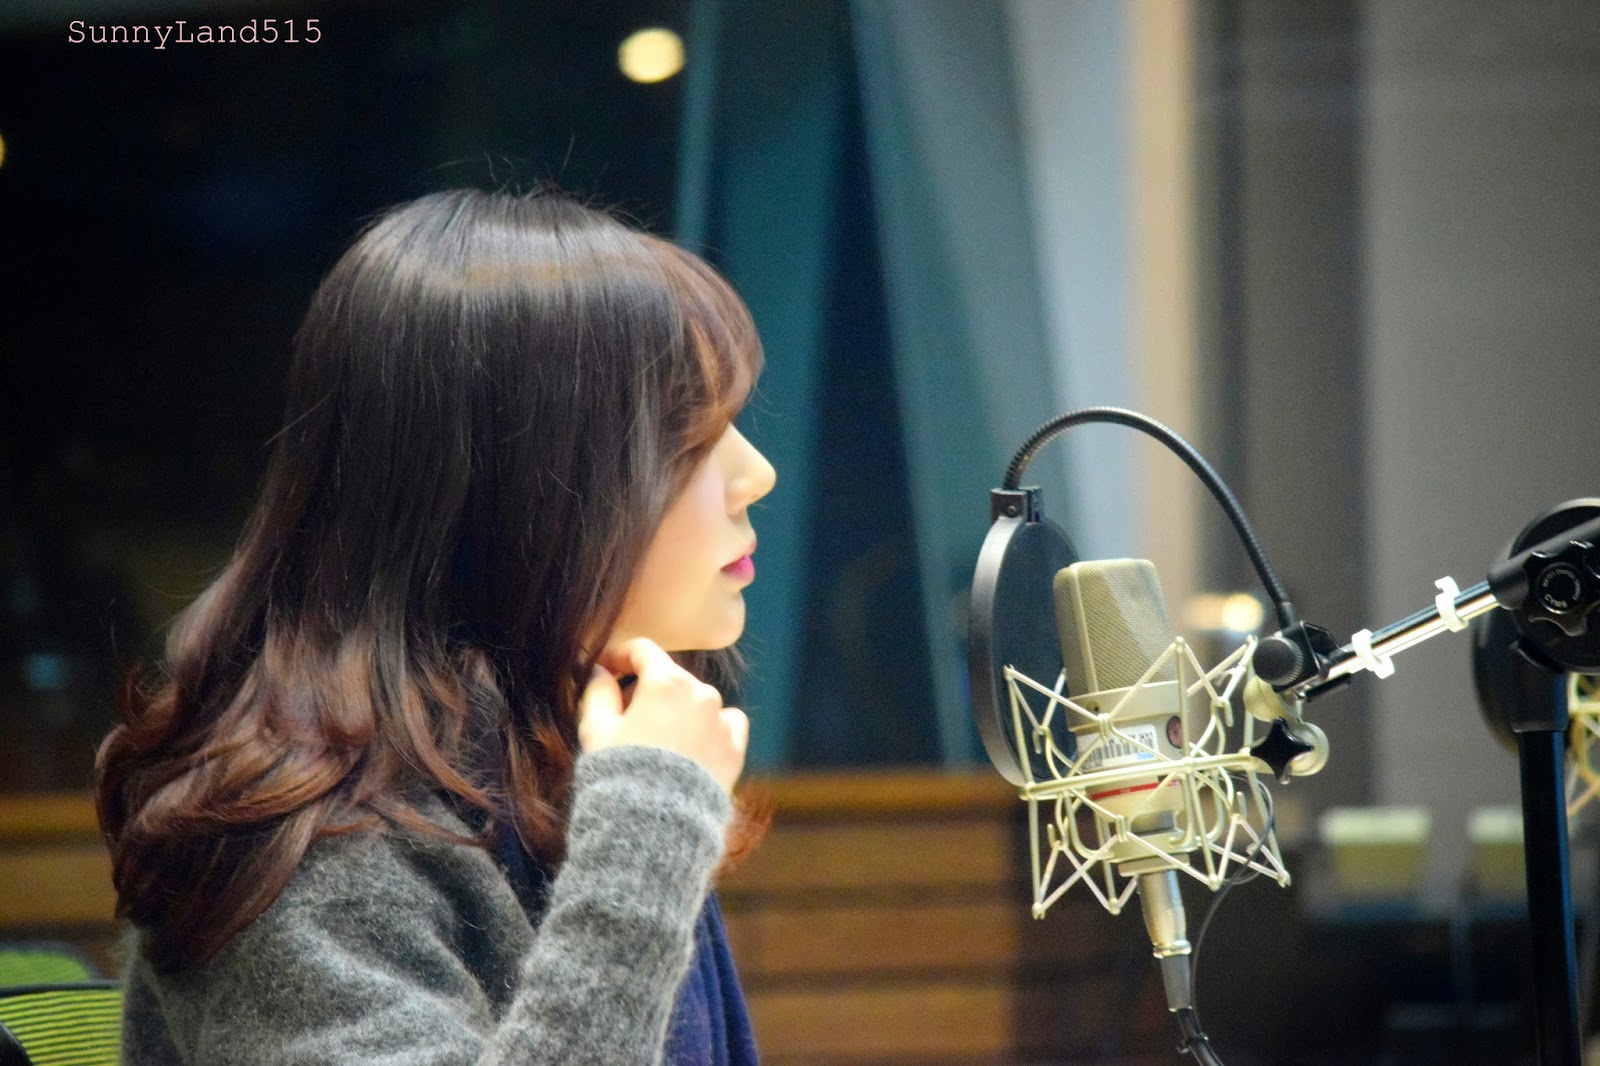 [OTHER][06-02-2015]Hình ảnh mới nhất từ DJ Sunny tại Radio MBC FM4U - "FM Date" - Page 10 DSC_0340_Fotor